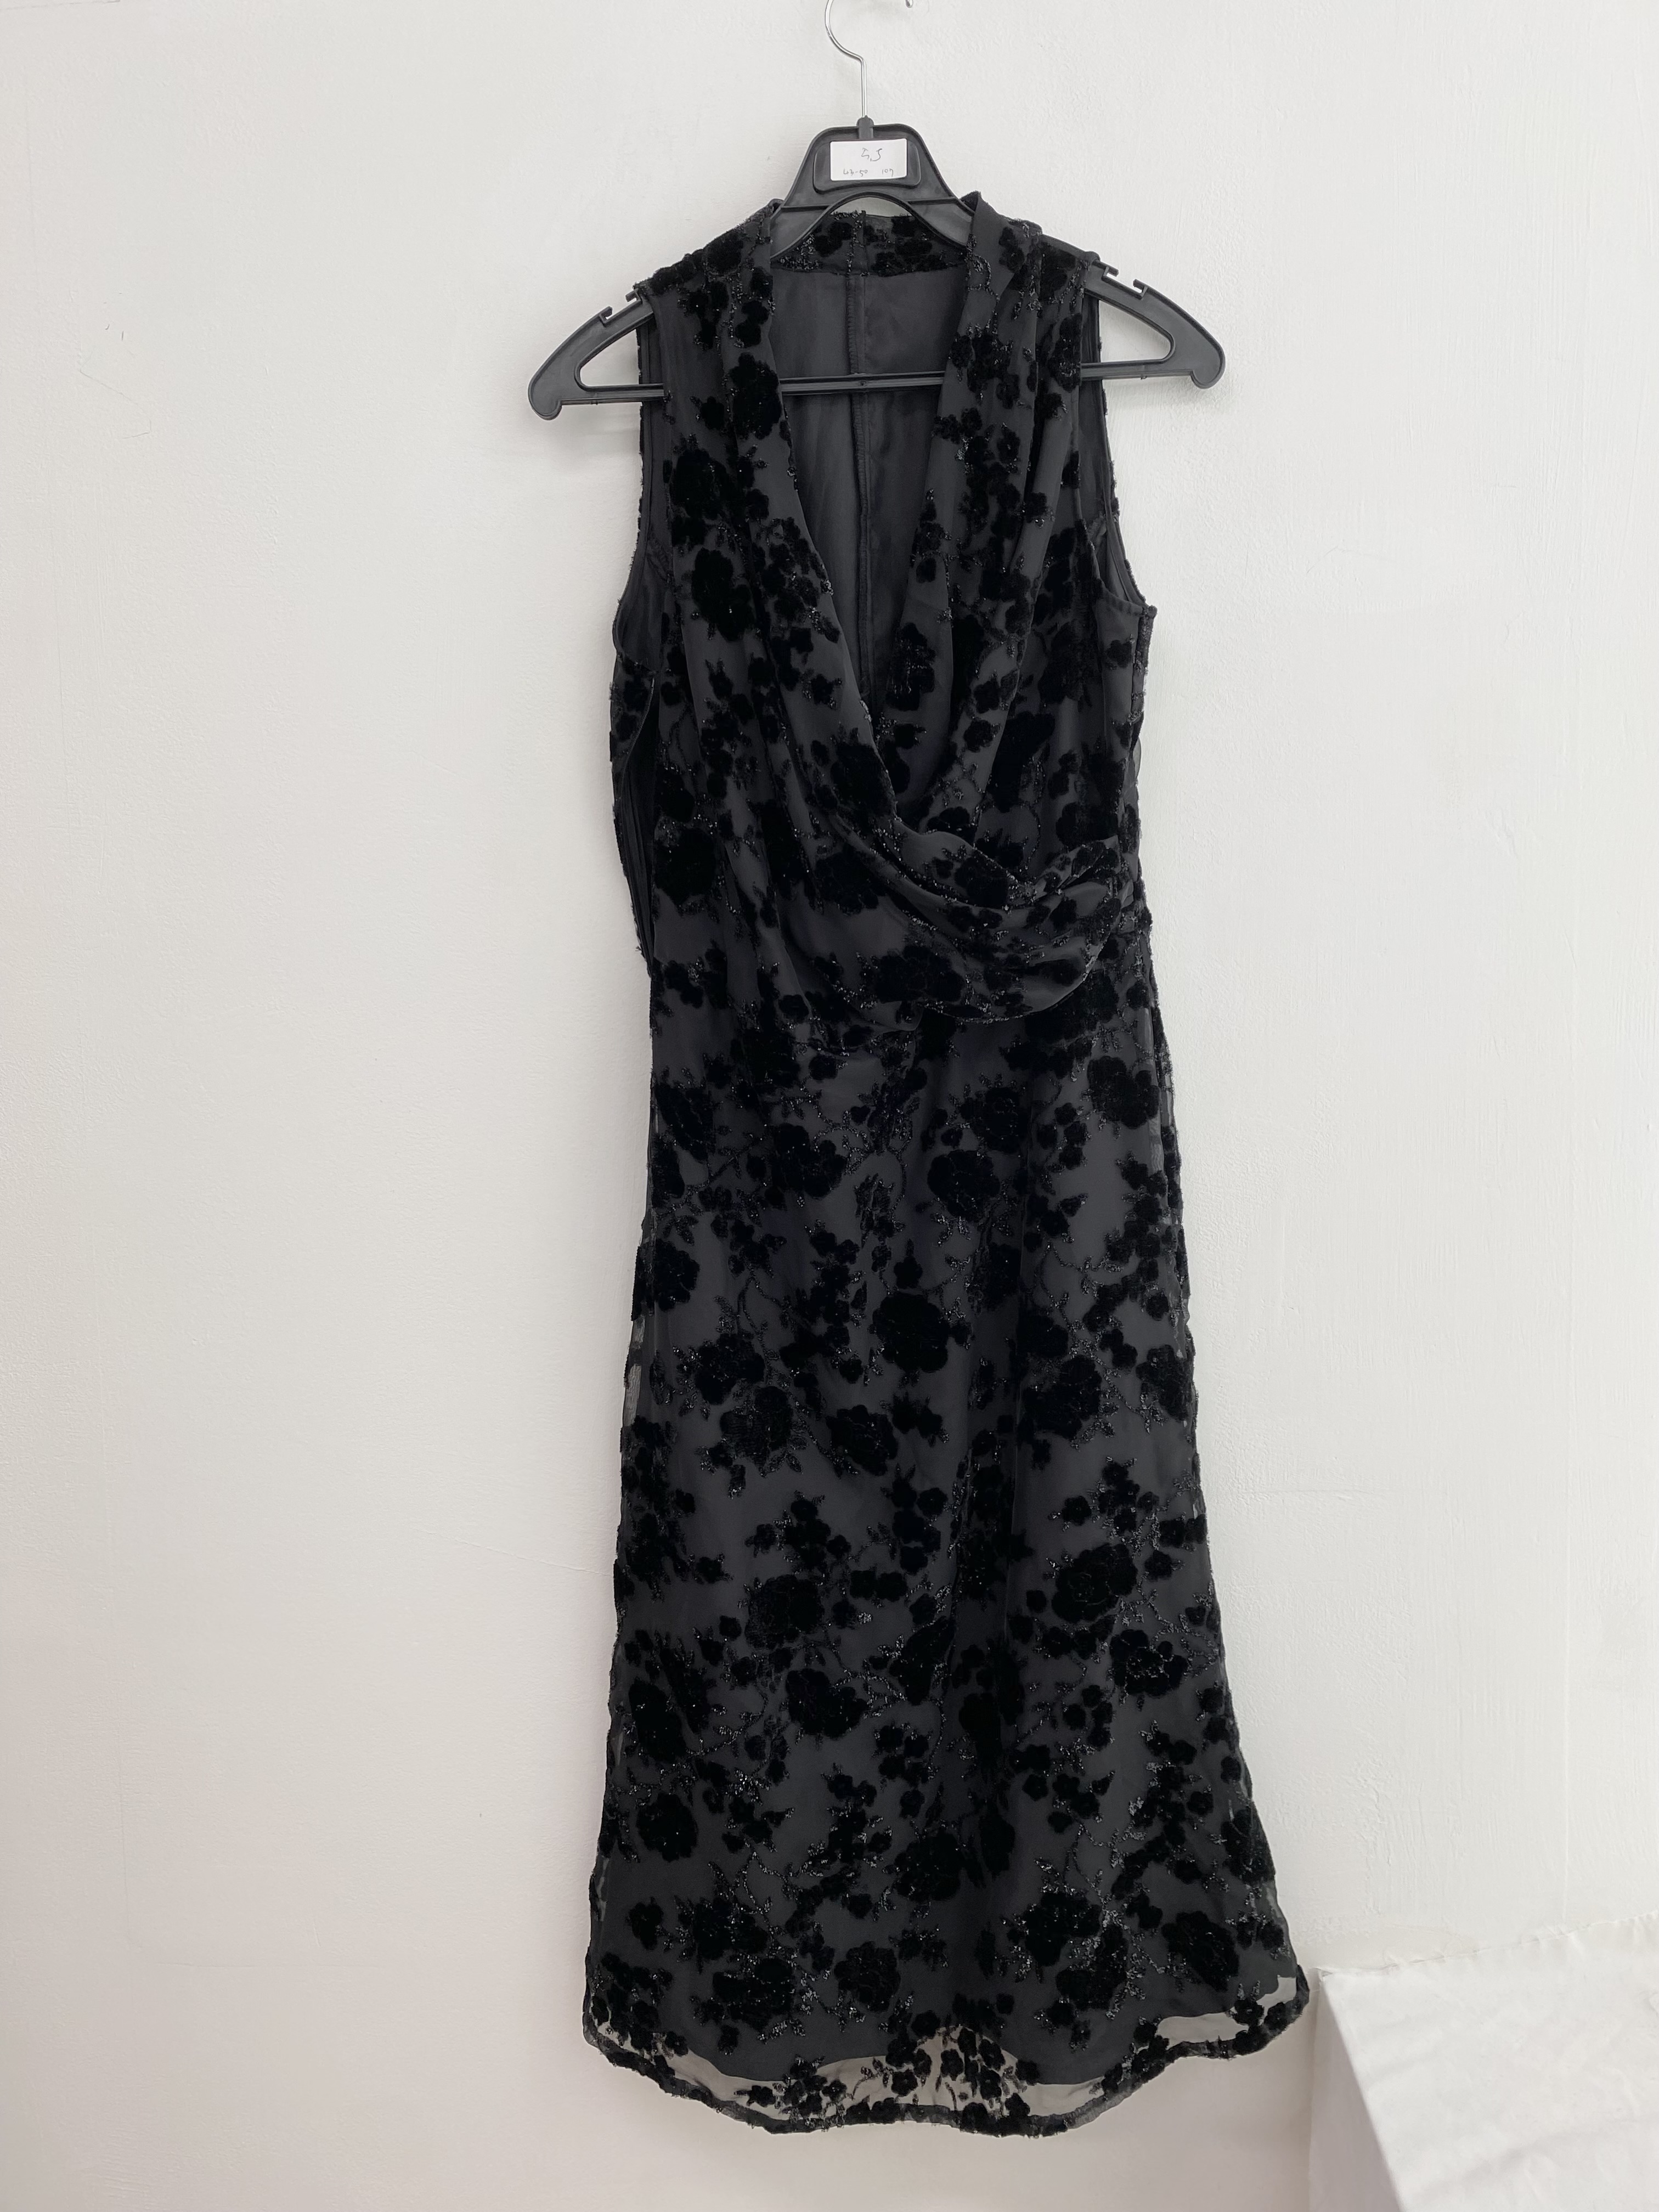 Charcoal black glittery emboss pattern sleeveless dress